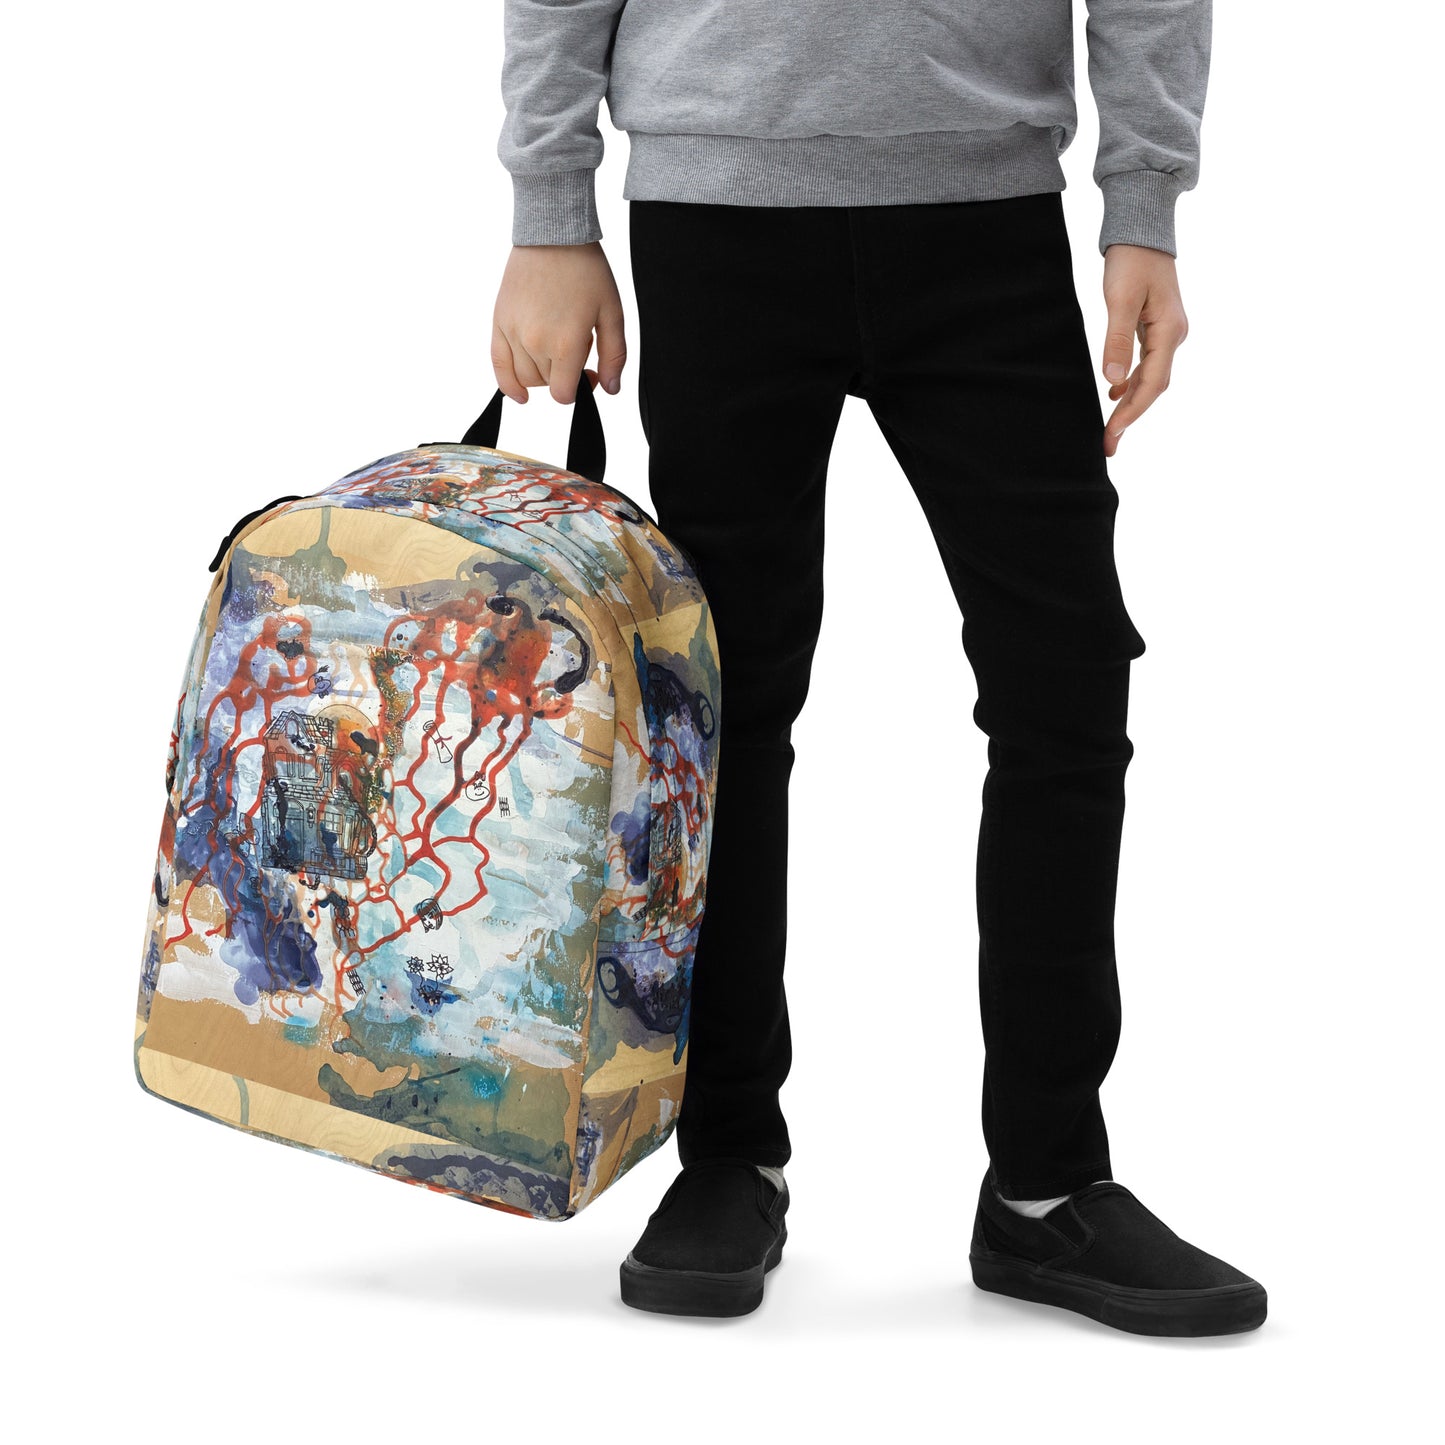 Minimalist Backpack - Freedom